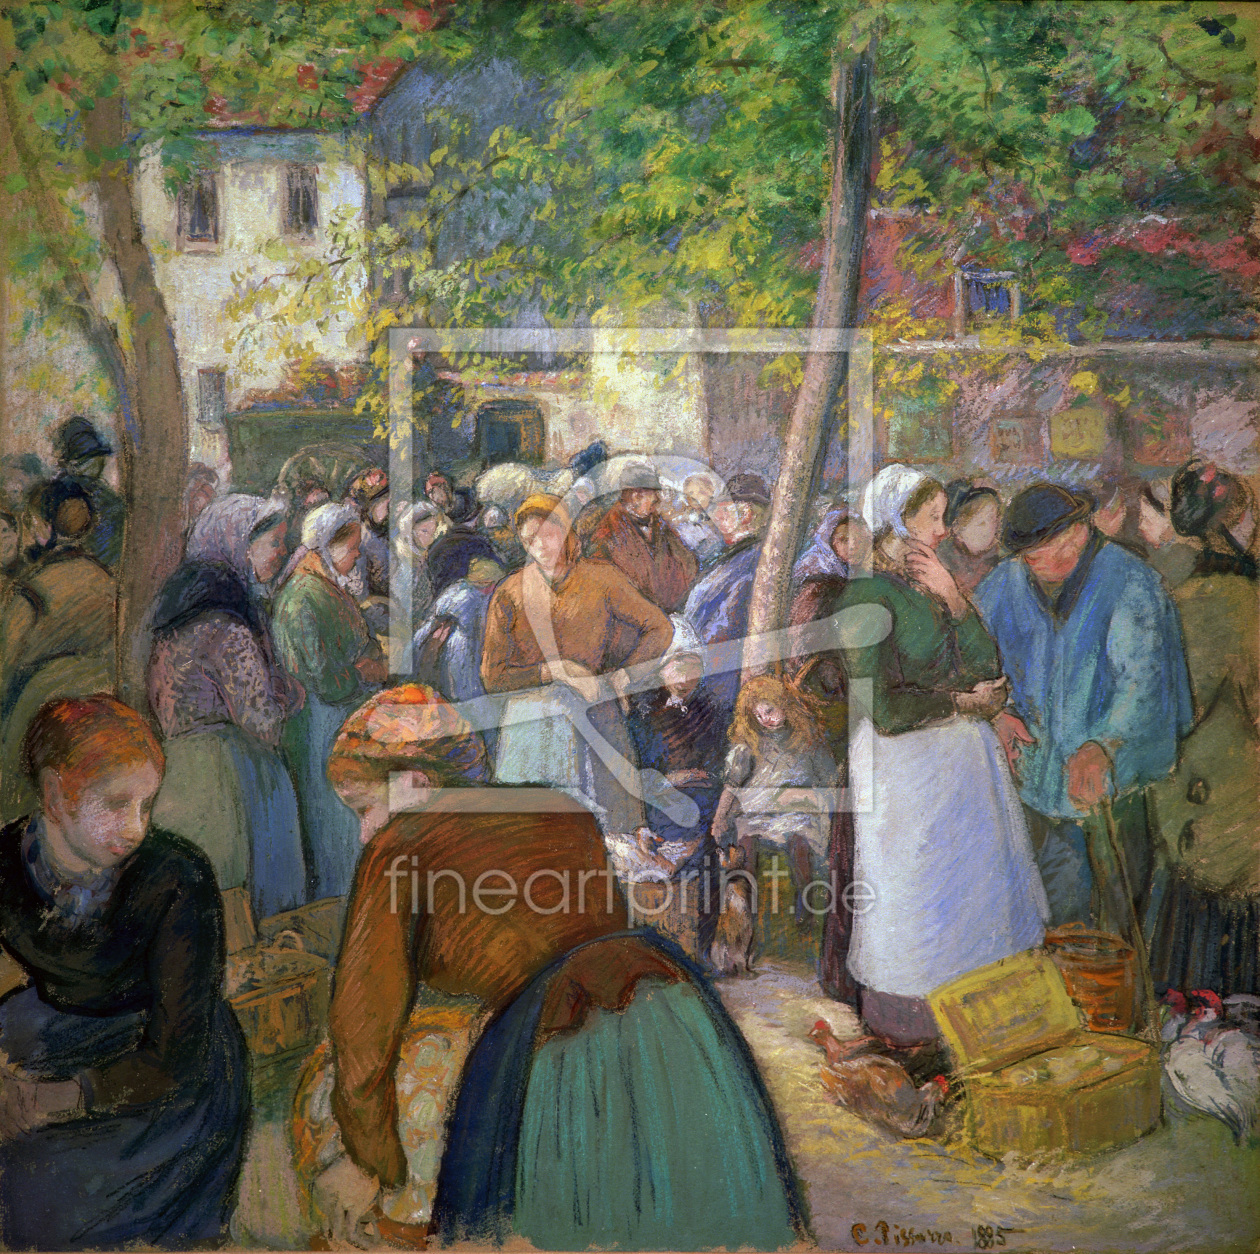 Bild-Nr.: 30006408 Pissarro / The poultry market / 1885 erstellt von Pissarro, Camille